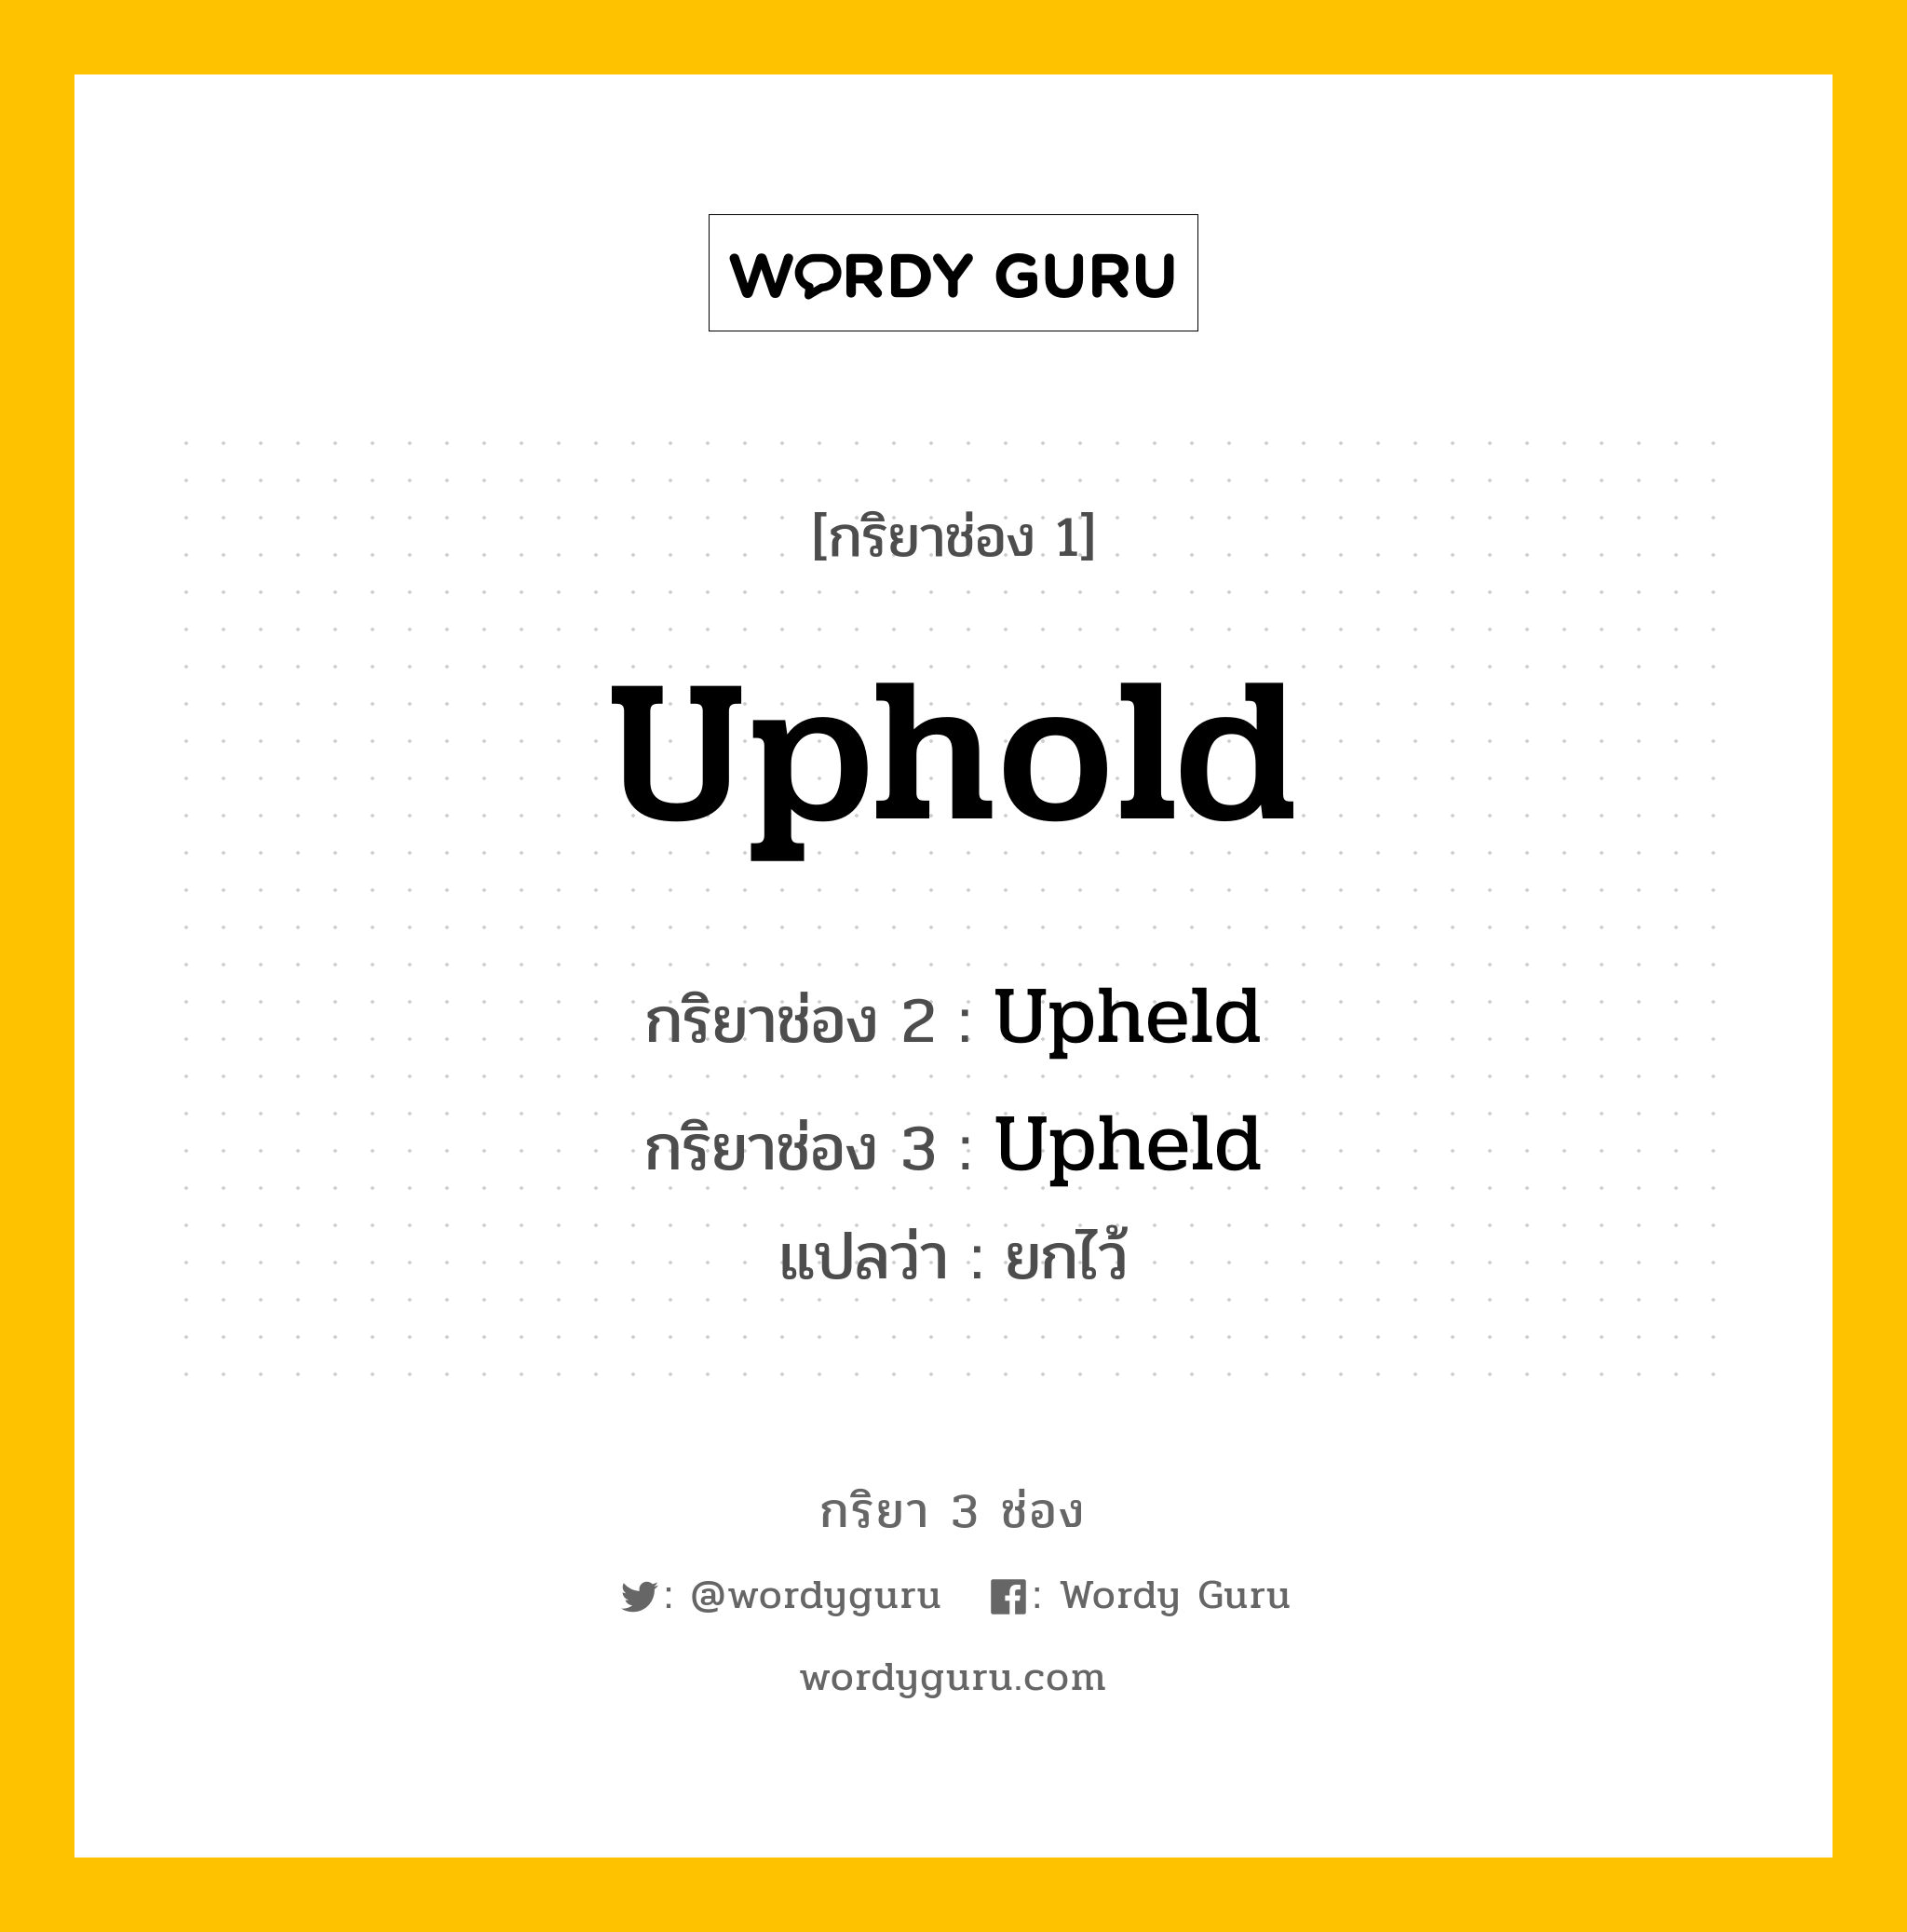 กริยา 3 ช่อง ของ Uphold คืออะไร?, กริยาช่อง 1 Uphold กริยาช่อง 2 Upheld กริยาช่อง 3 Upheld แปลว่า ยกไว้ หมวด Irregular Verb หมวด Irregular Verb